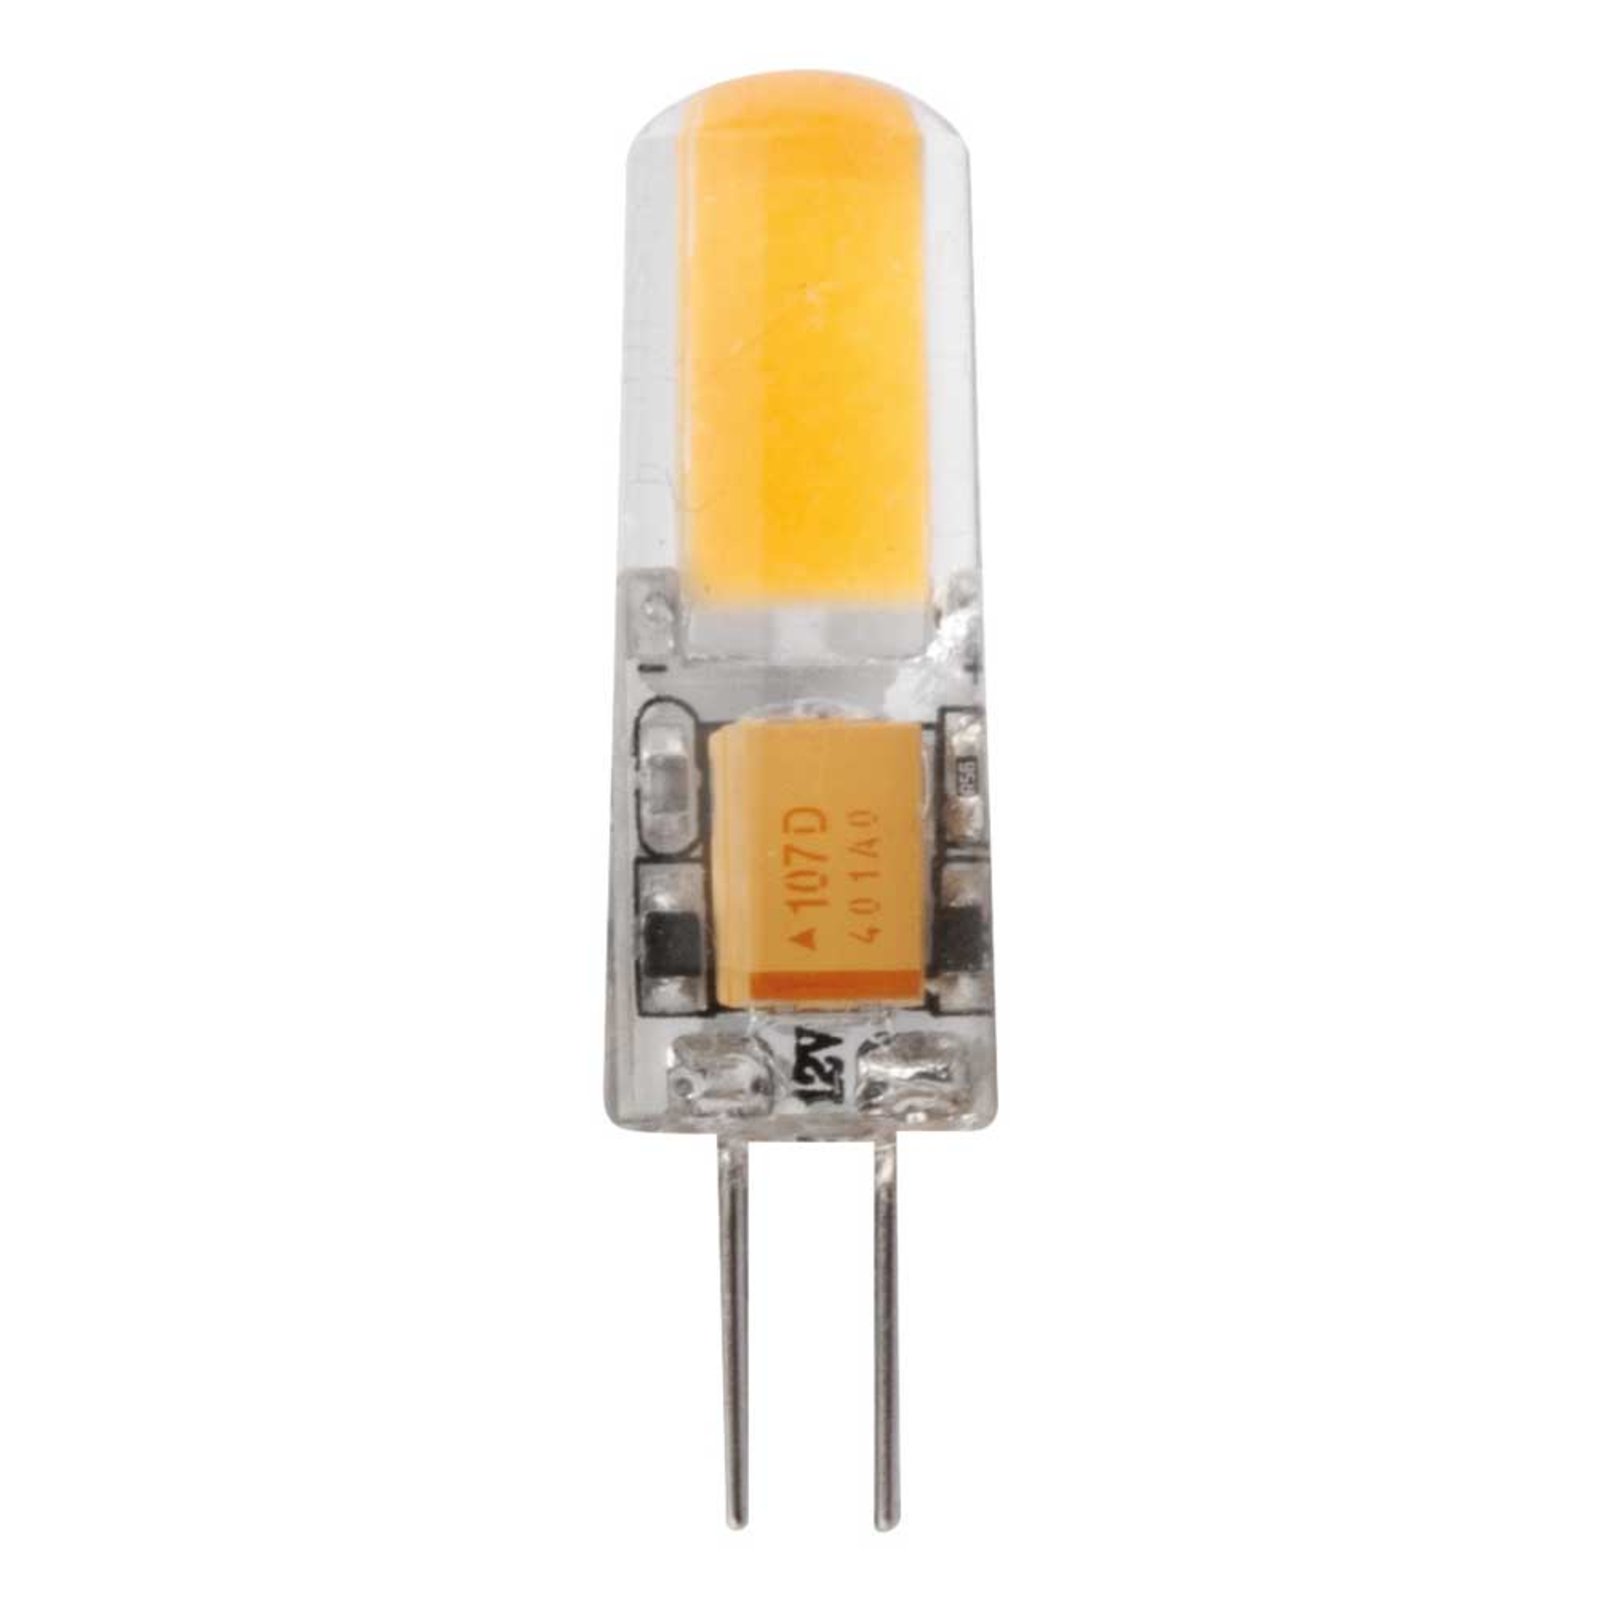 Bombilla LED bi-pin G4 1,8W blanco cálido